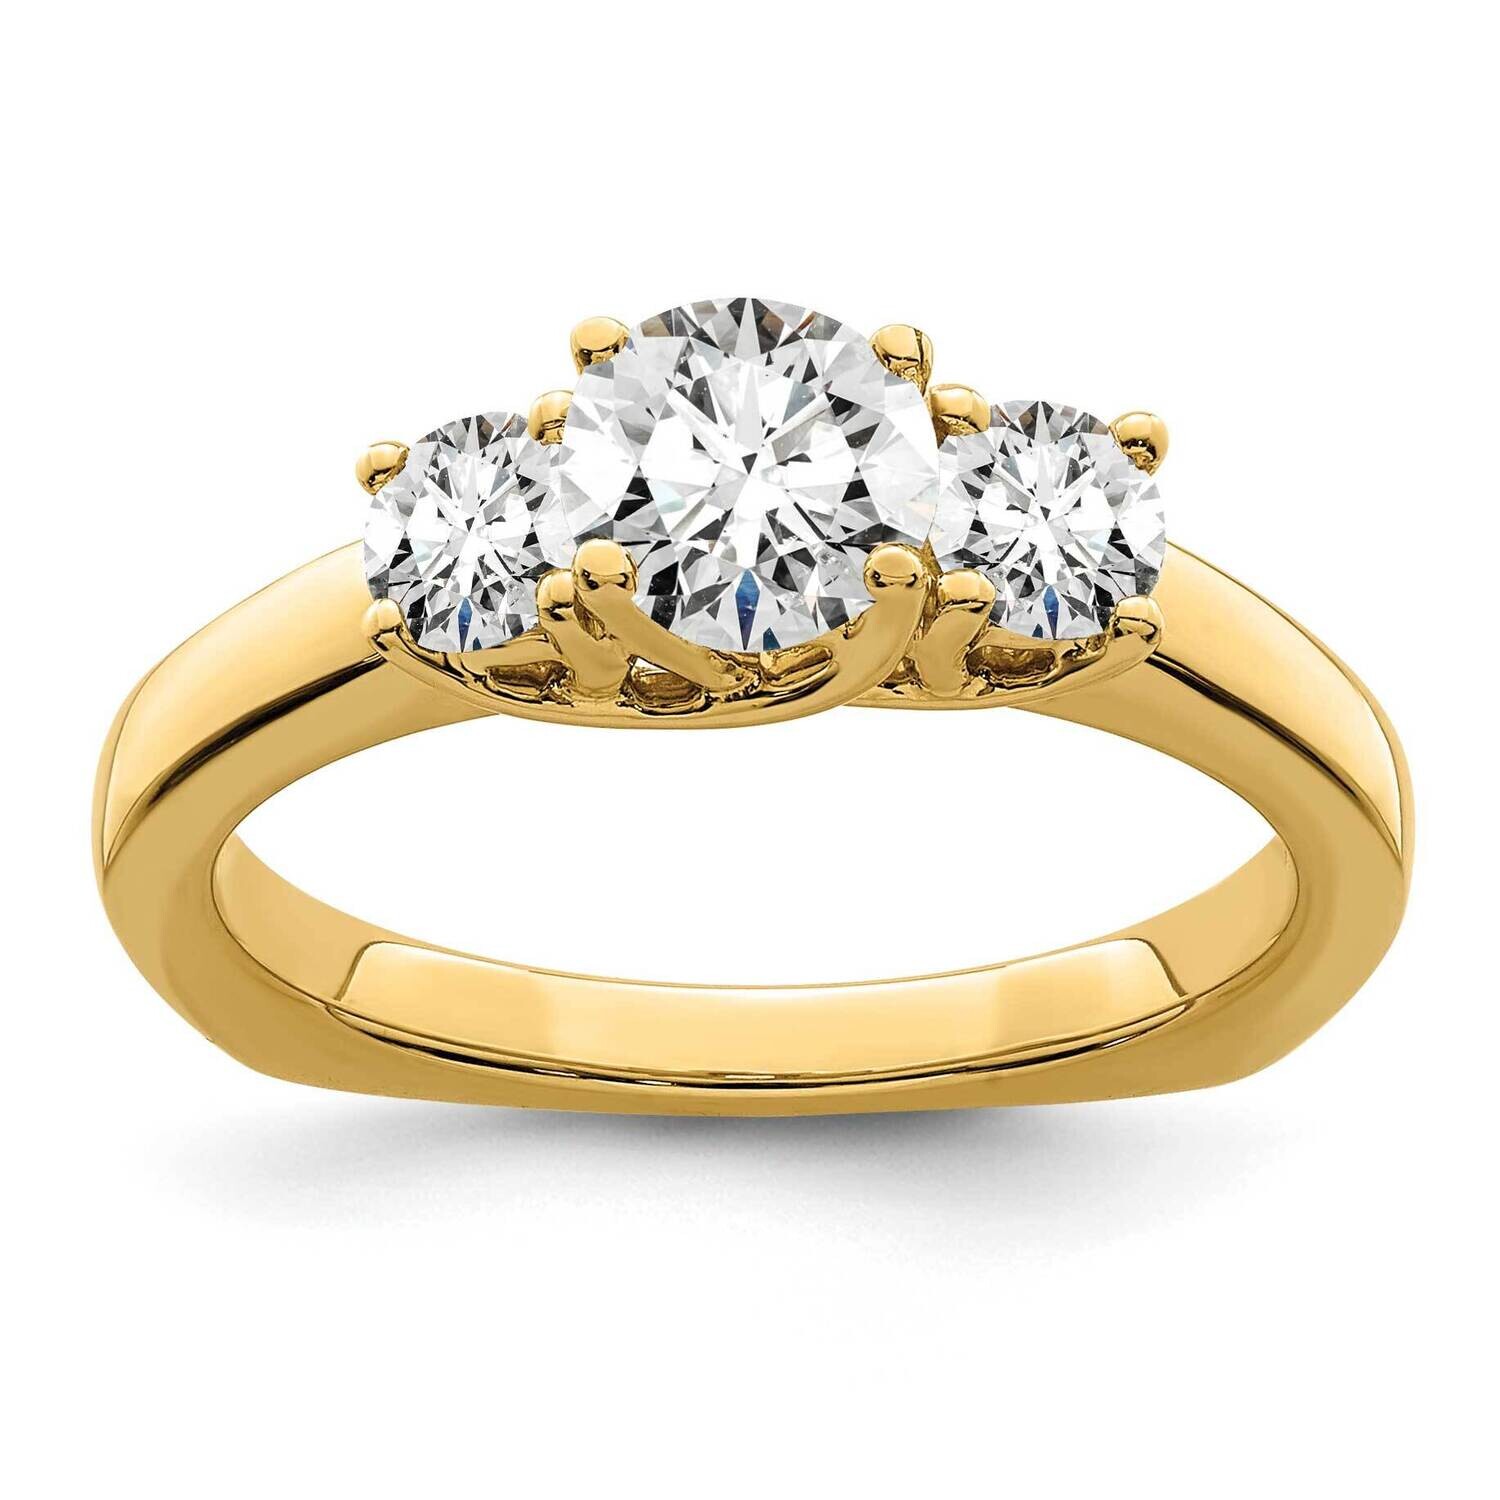 True Origin 1/2 Carat Diamond Vs/Si D E F Semi Mount Peg Set Ring 14k Gold RM2953E-038_050-YAA